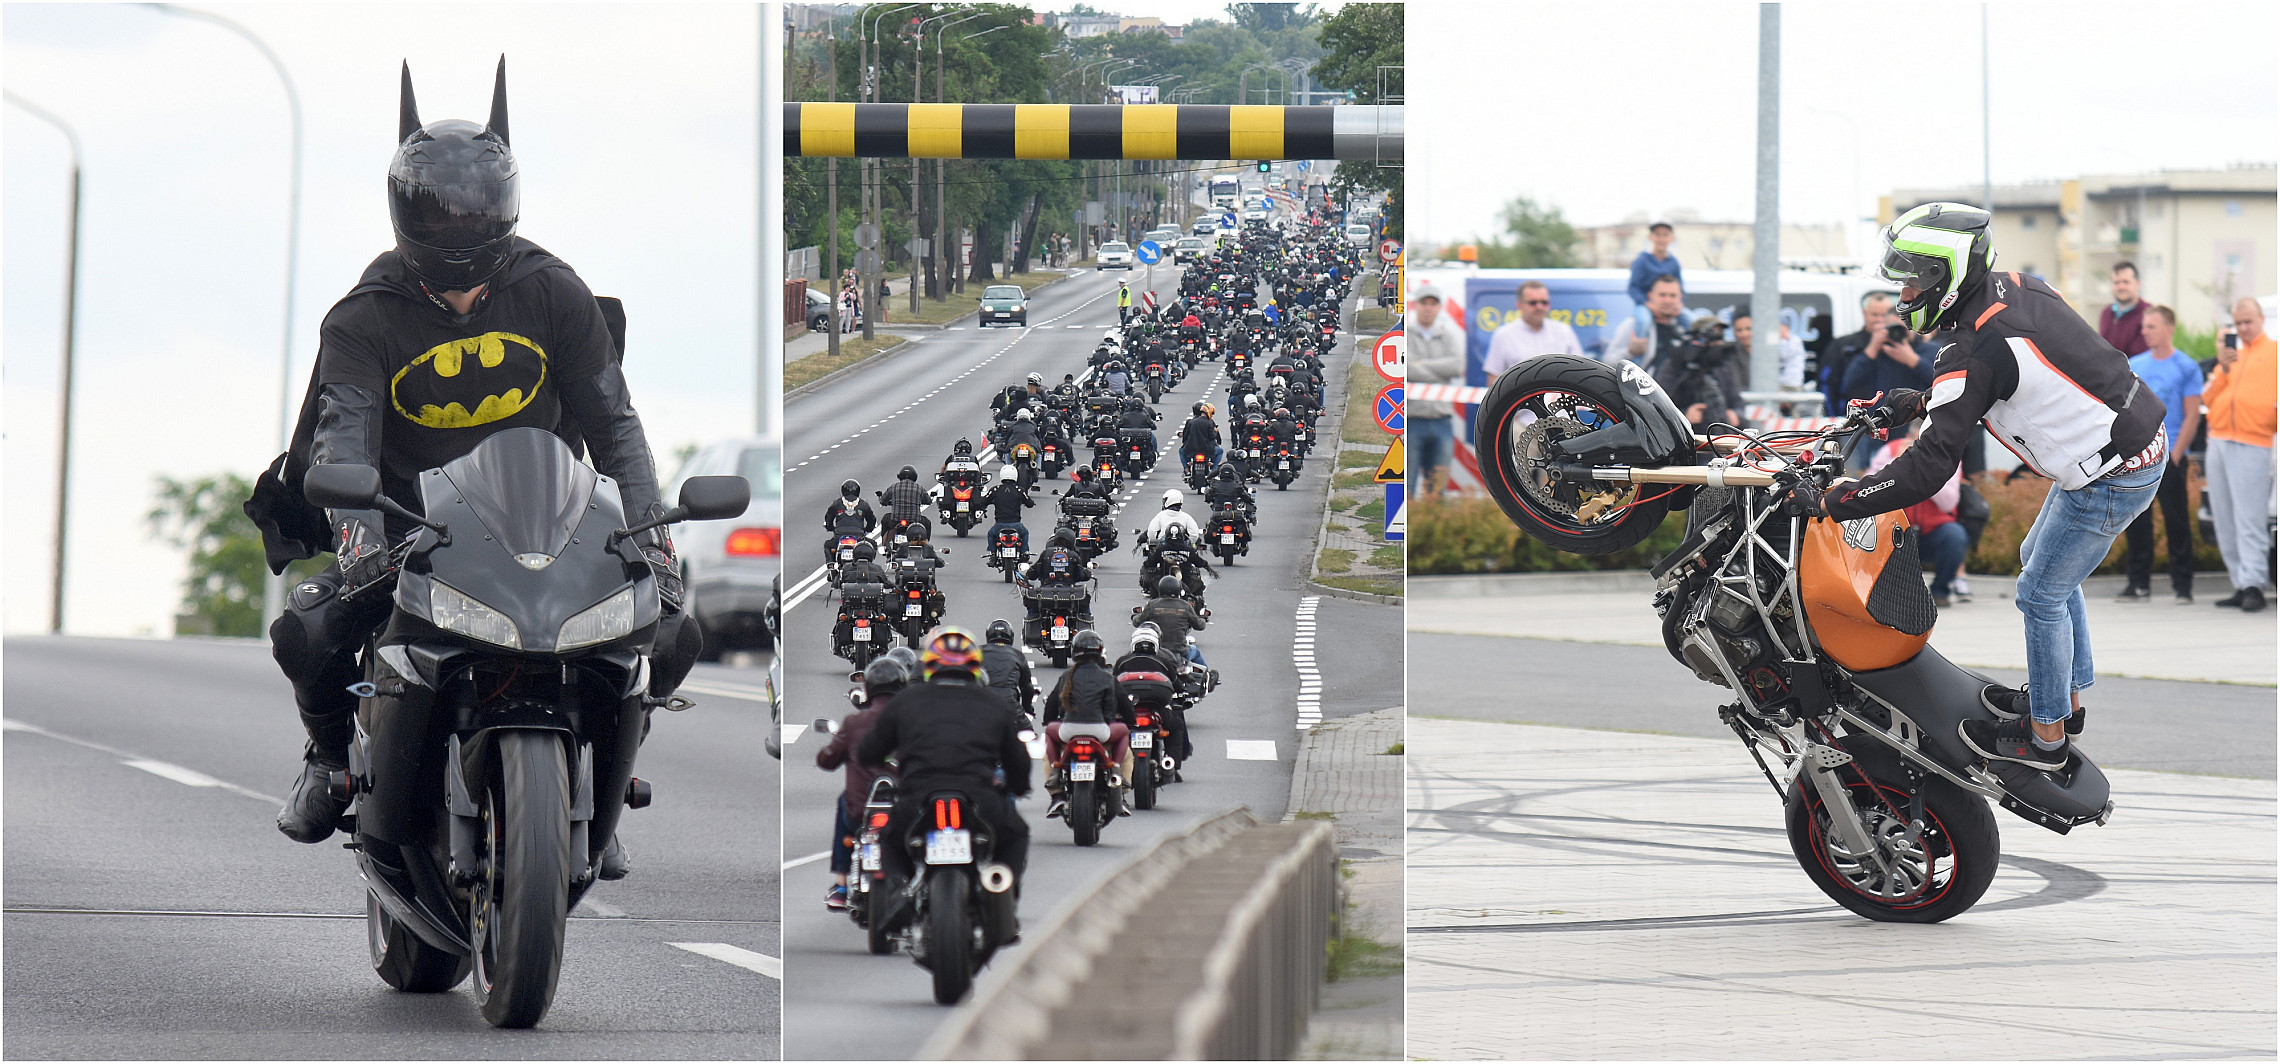 Inowrocław - Motocykliści opanowali miasto. Parada i pokazy